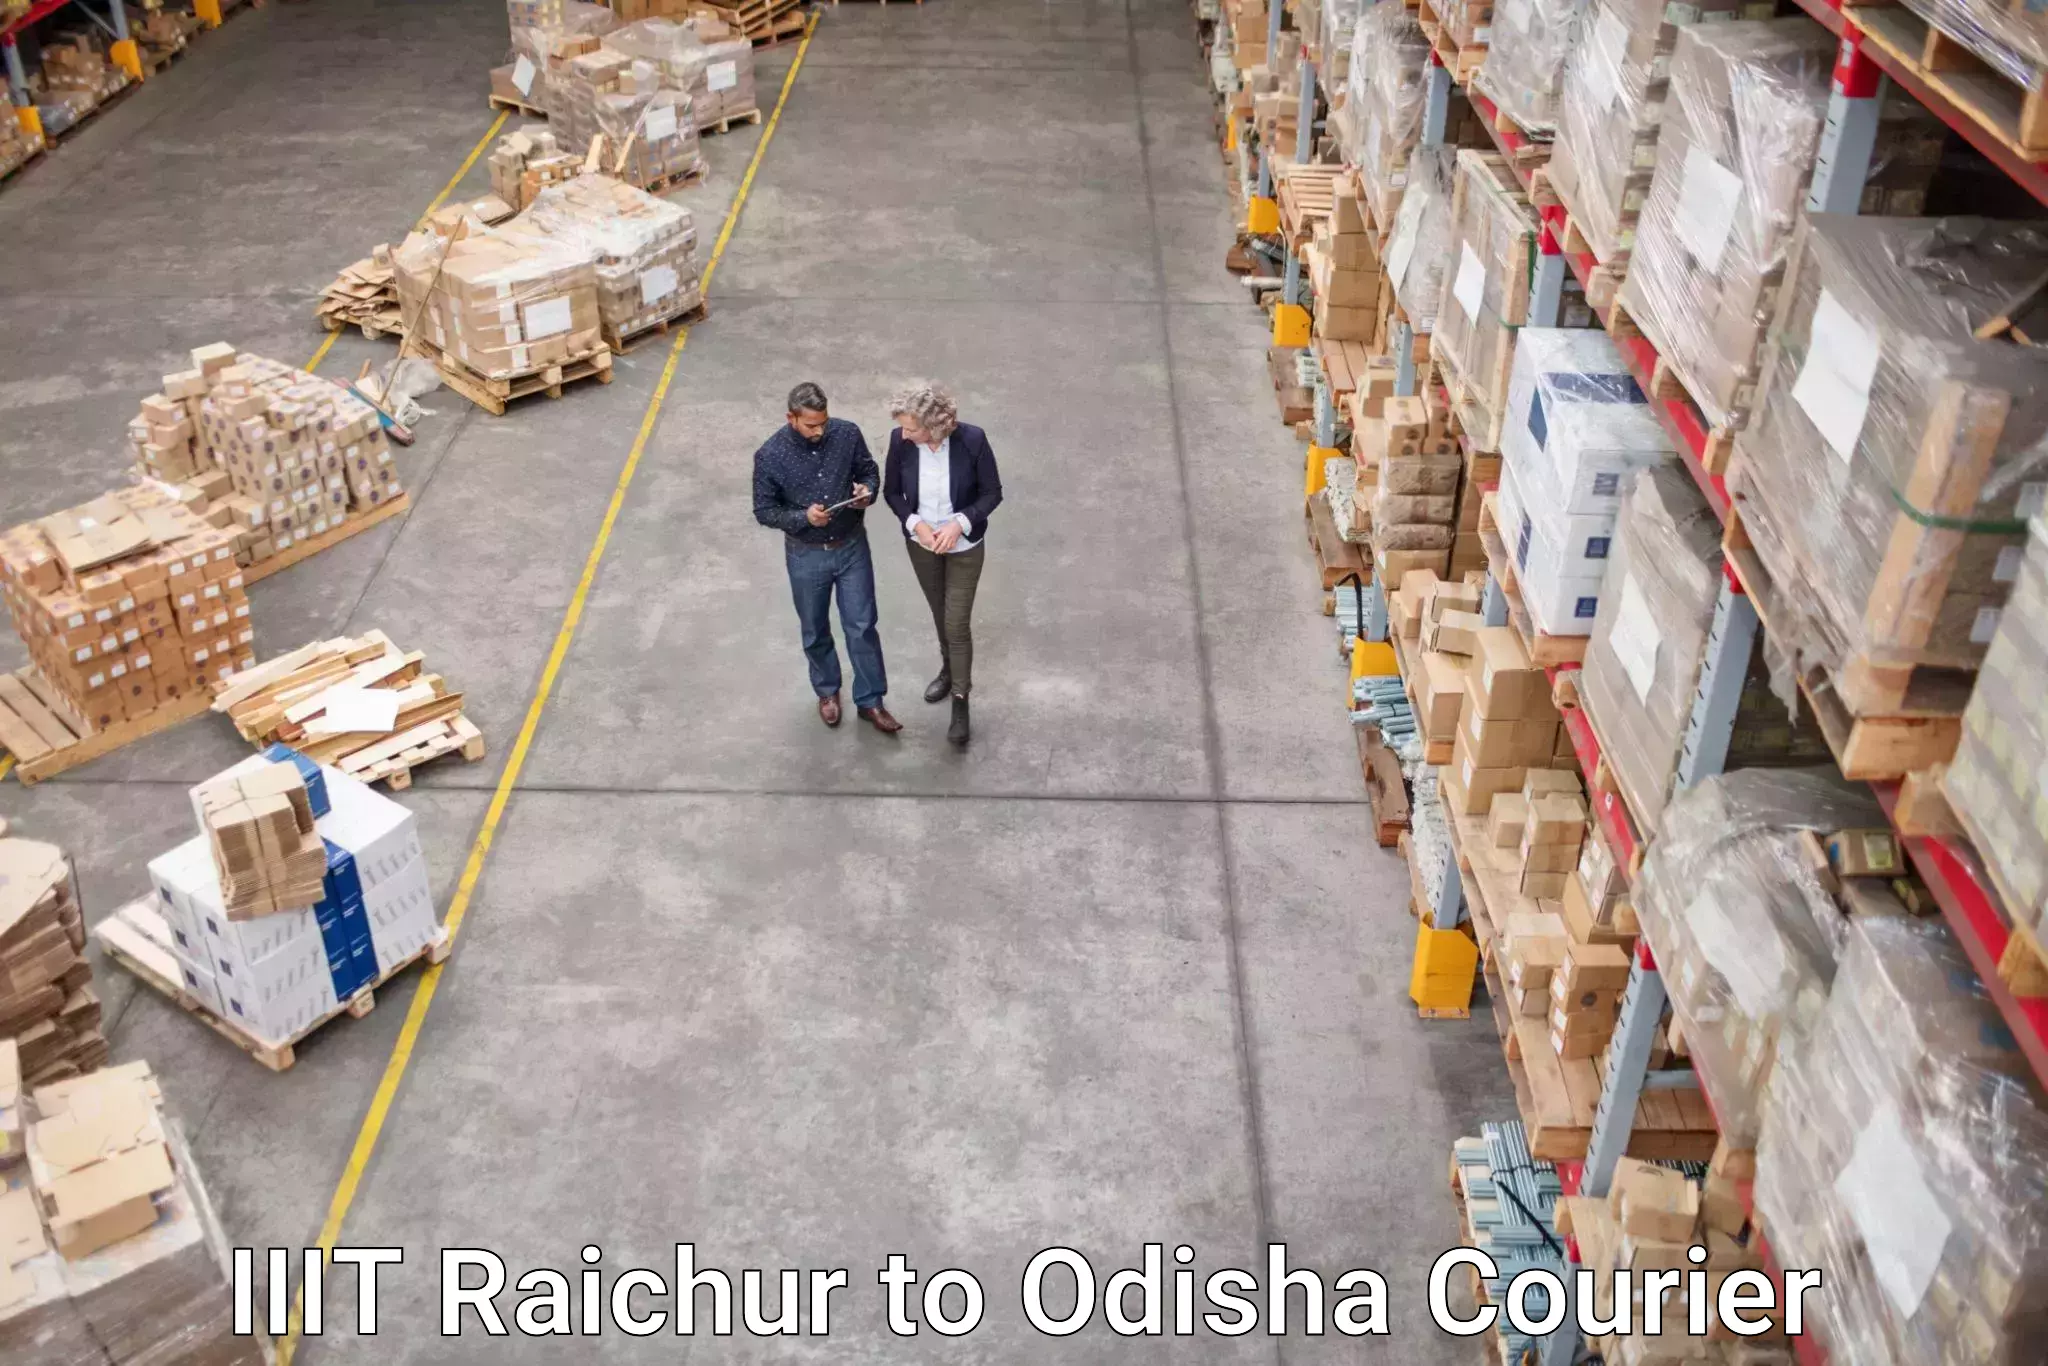 Business shipping needs IIIT Raichur to Bangriposi